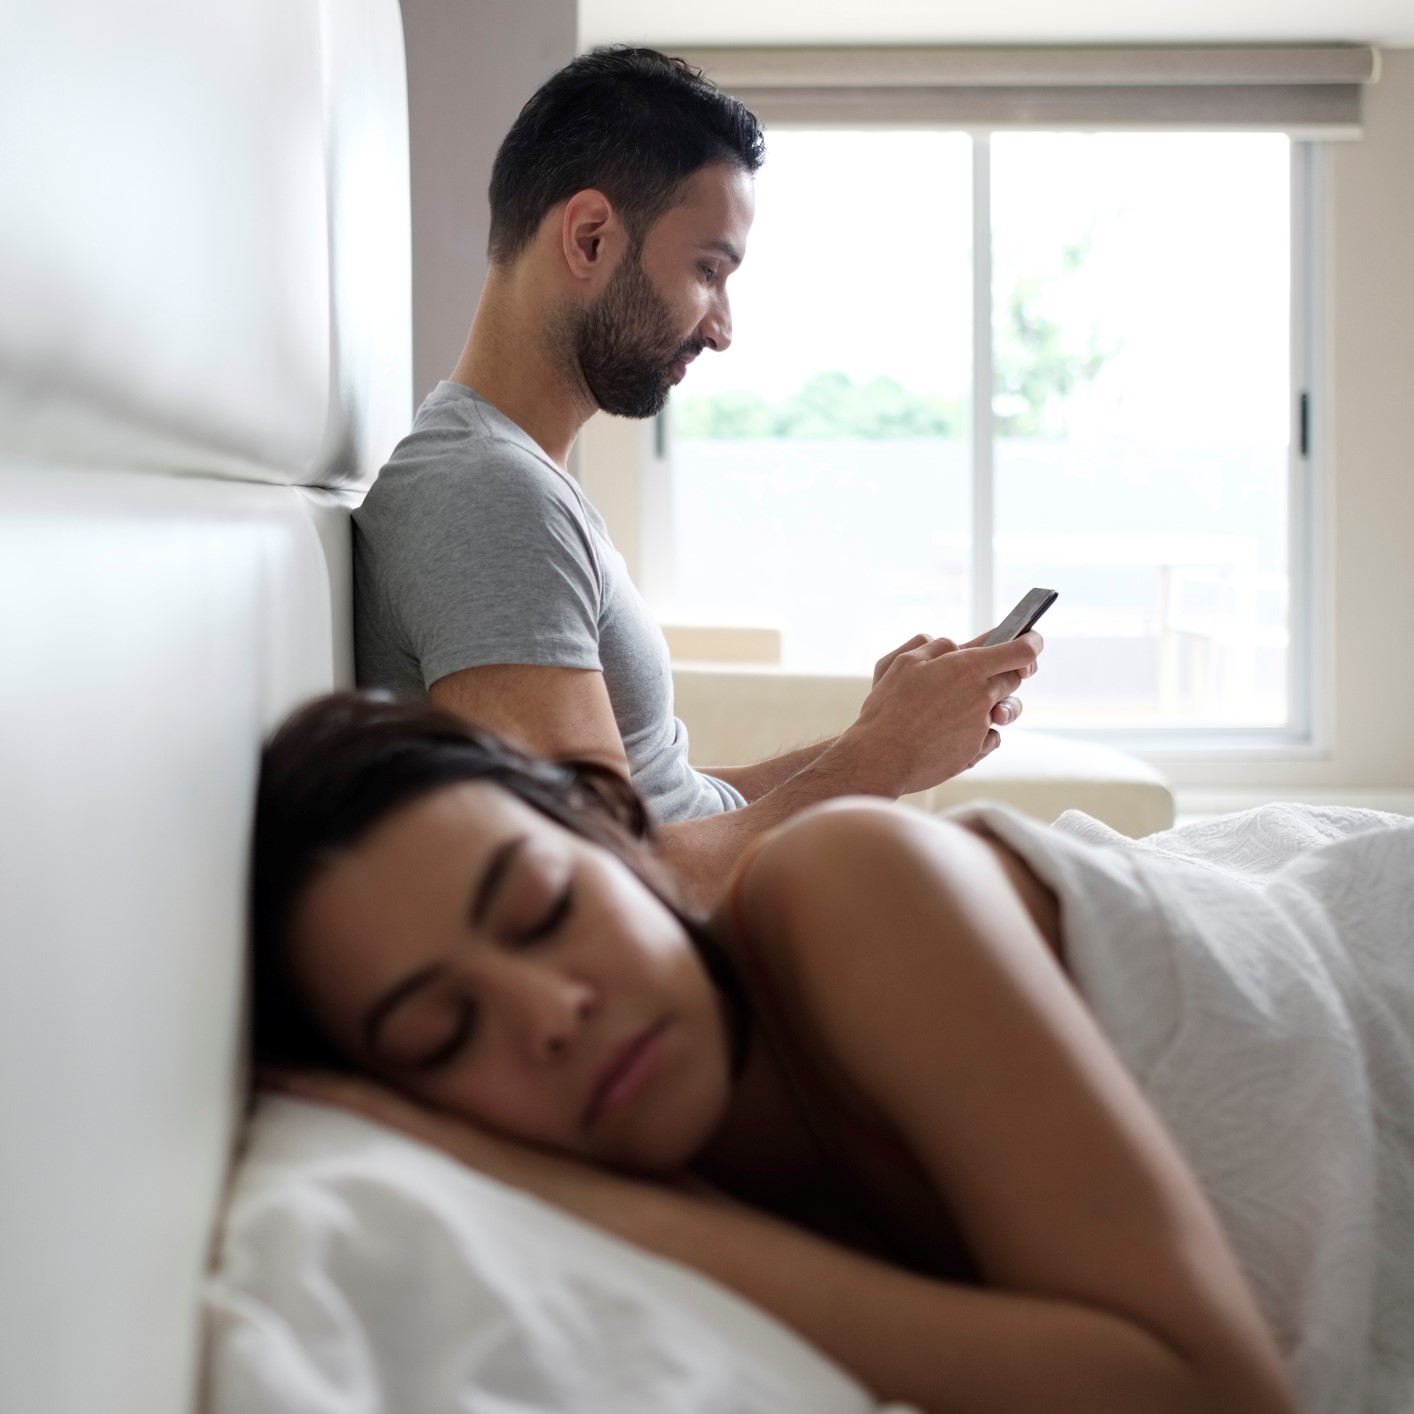 Un chico sentado en la cama mira el móvil y al lado está su chica durmiendo.